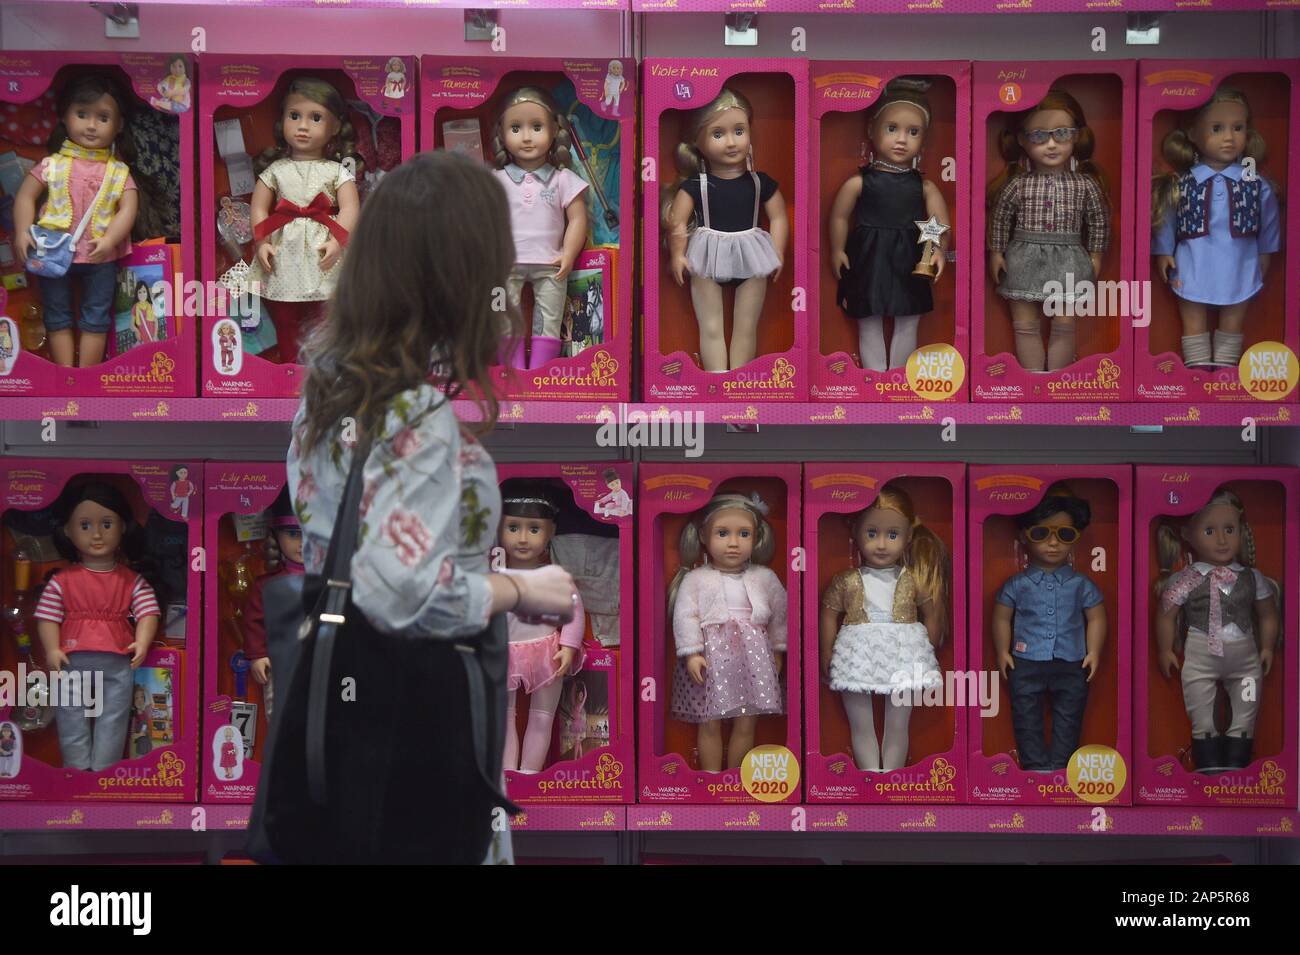 Our Generation Dolls en vente à Paris